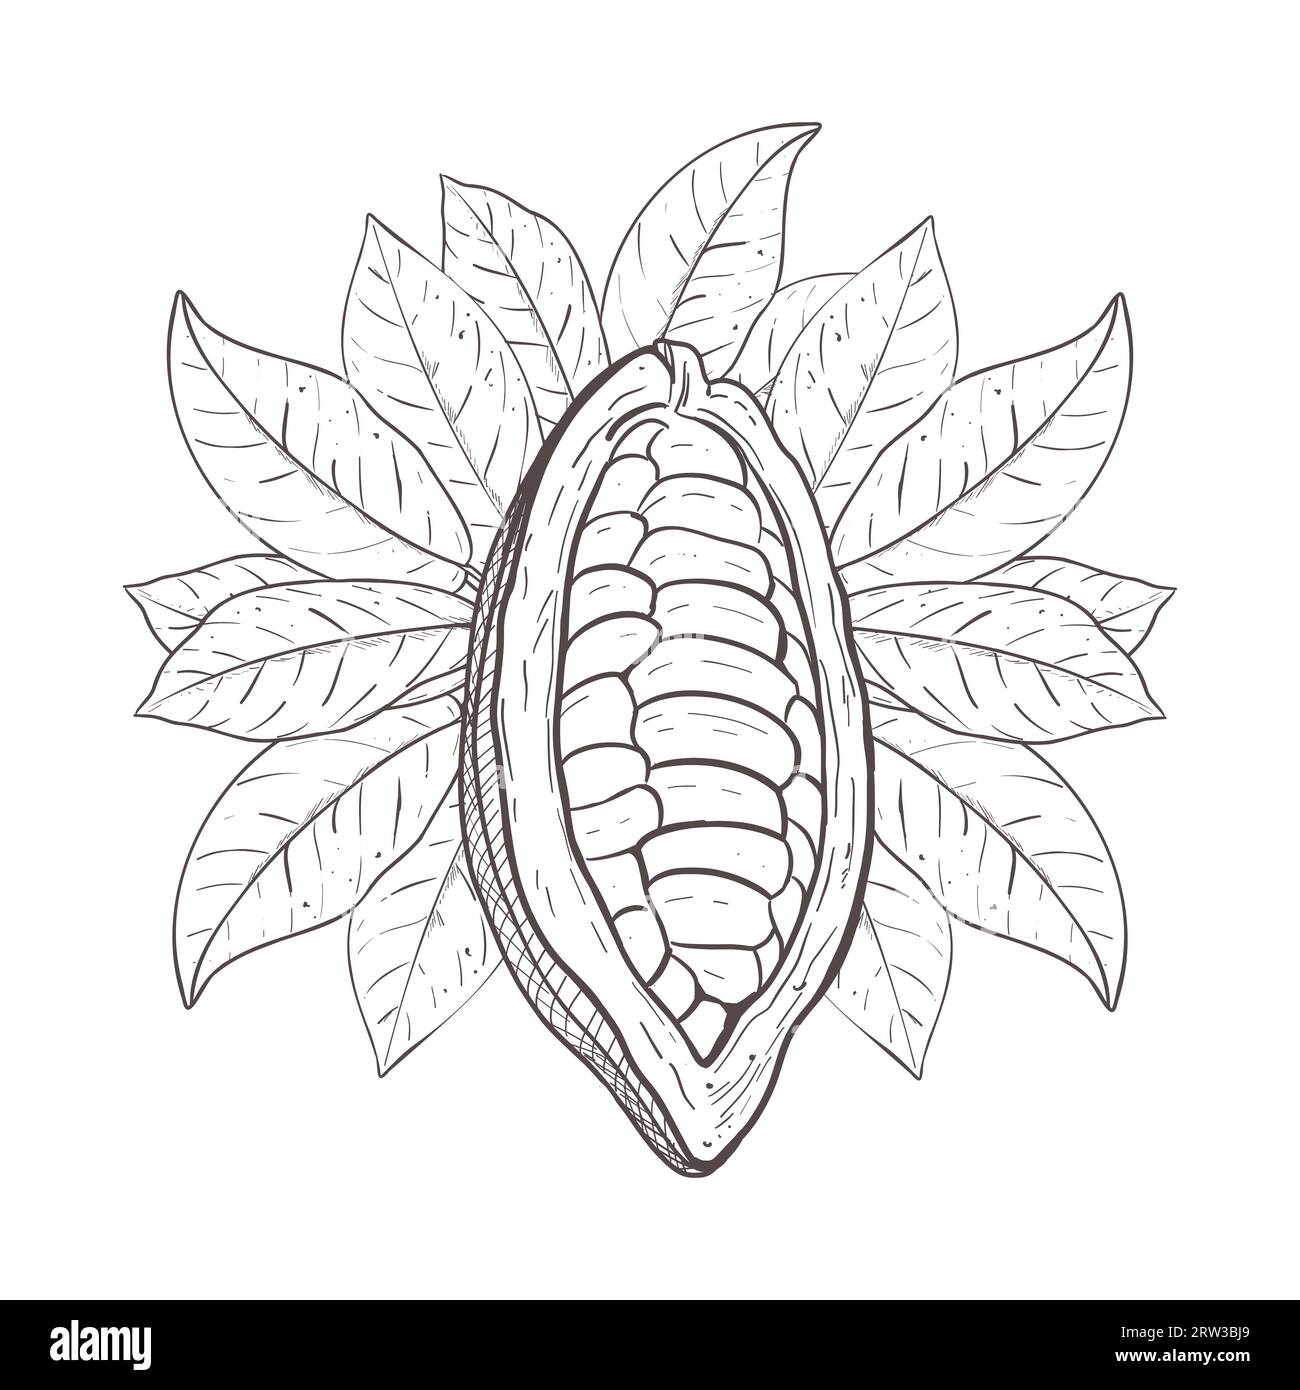 Illustrazione vettoriale del cacao grezzo aperto con fagioli non sbucciati e foglie di cacao. Contorno nero della curva della foglia, disegno grafico. Per cartoline, design e. Illustrazione Vettoriale